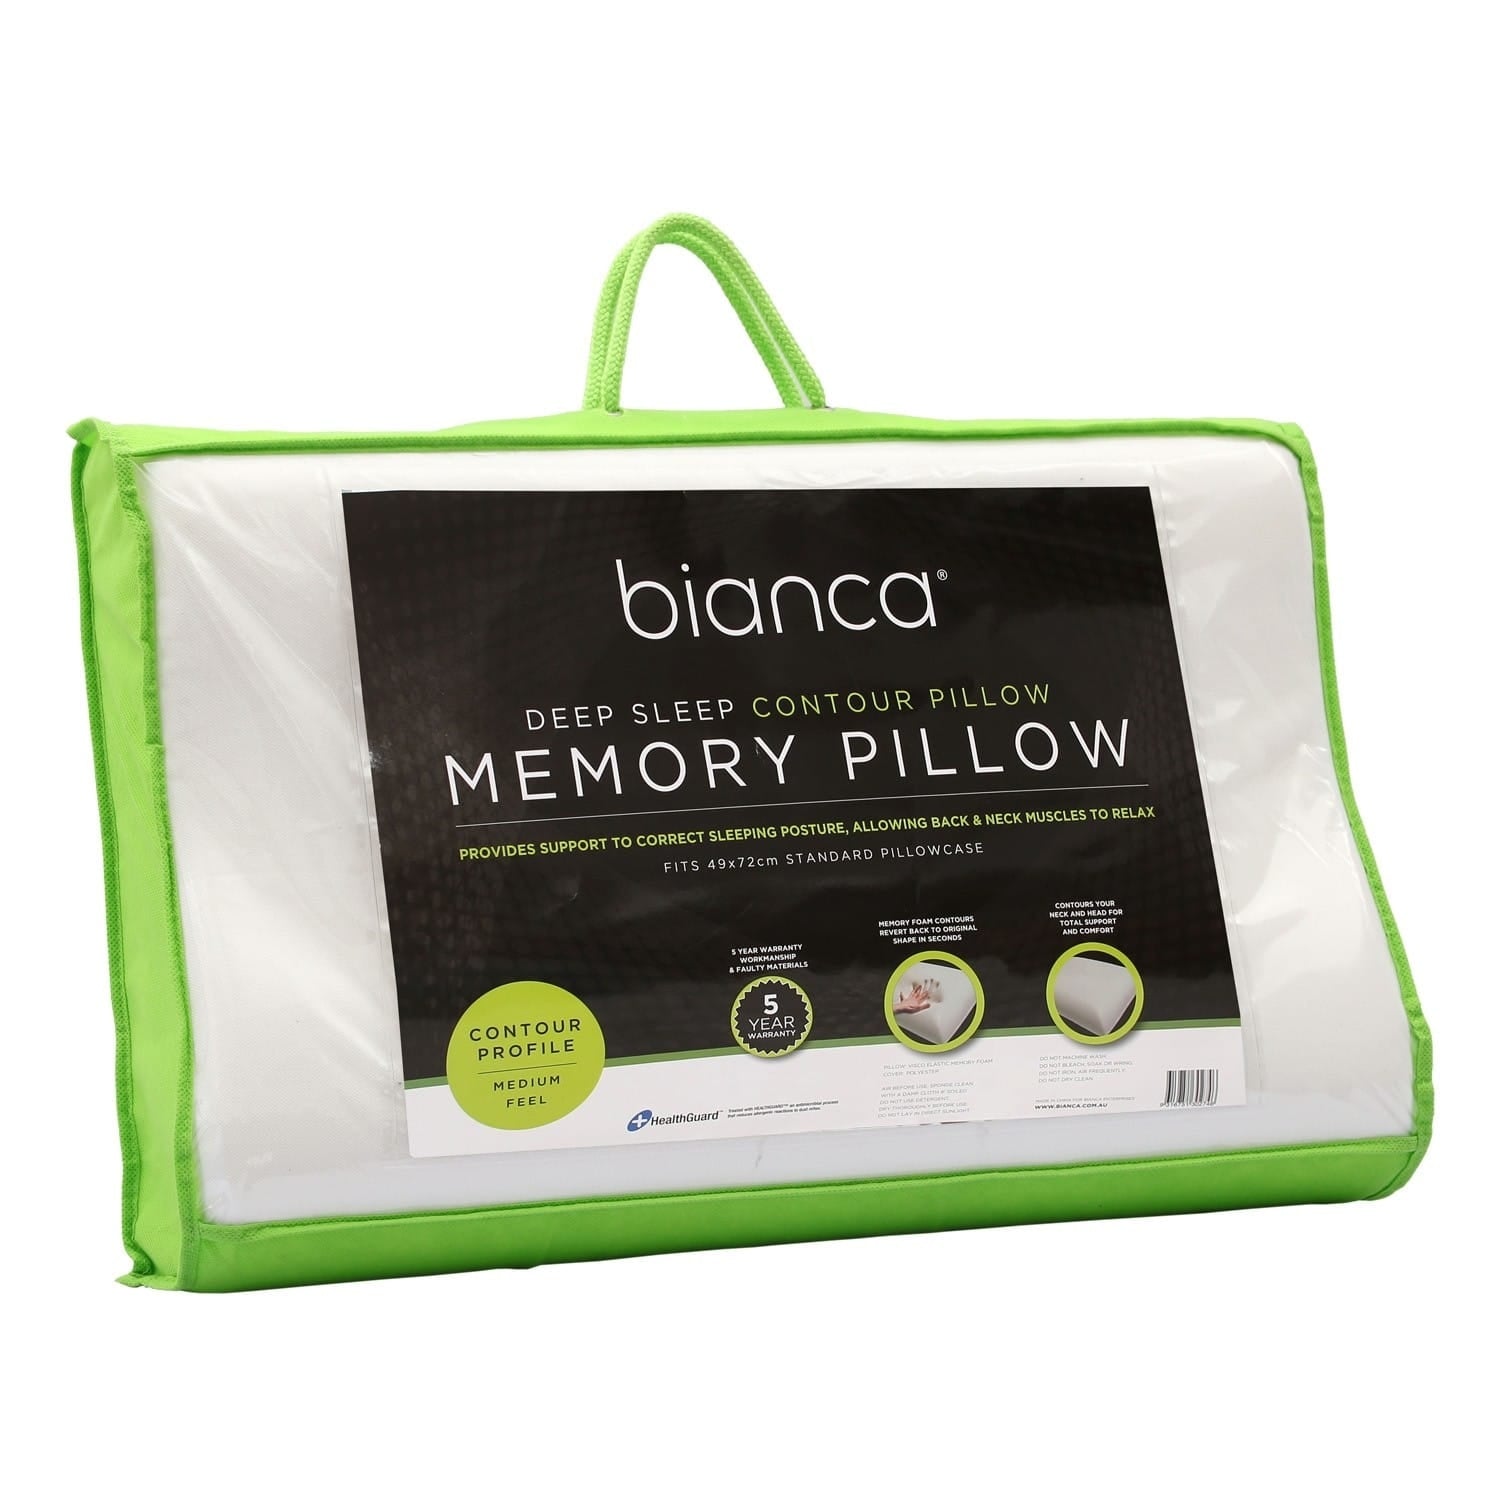 Bianca Deep Sleep Contour Memory Foam Pillow - Mattress & Pillow SciencePillows